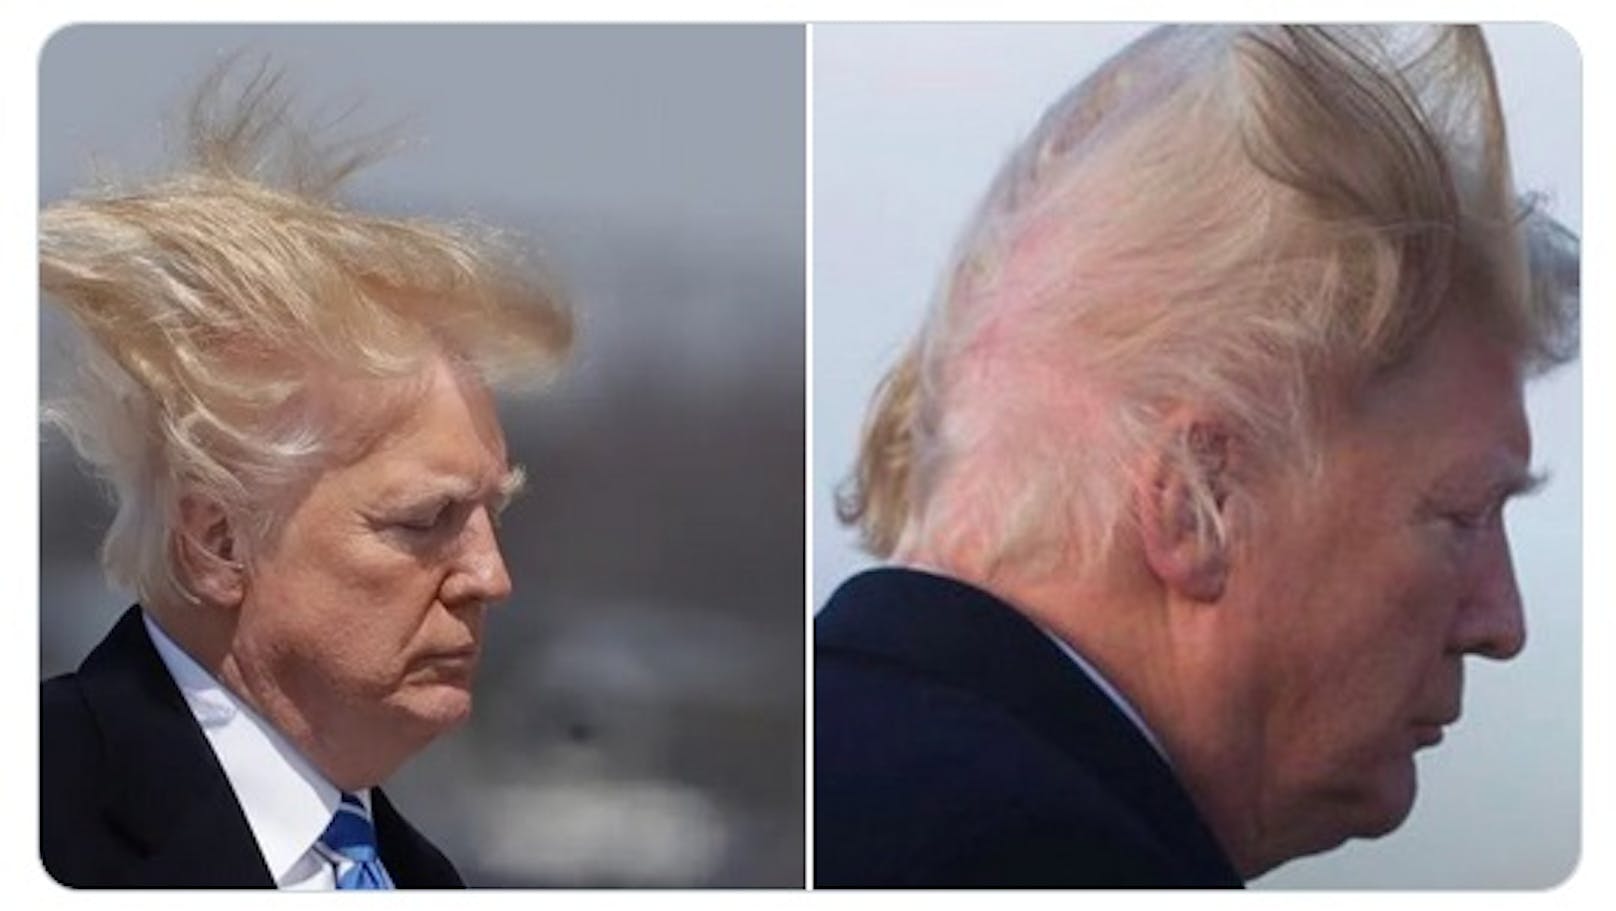 "Der größte Verbrecher in der Geschichte der USA ist, wer auch immer Donald Trump 70.000 Dollar abgeknöpft hat, um seine Haare zu machen."